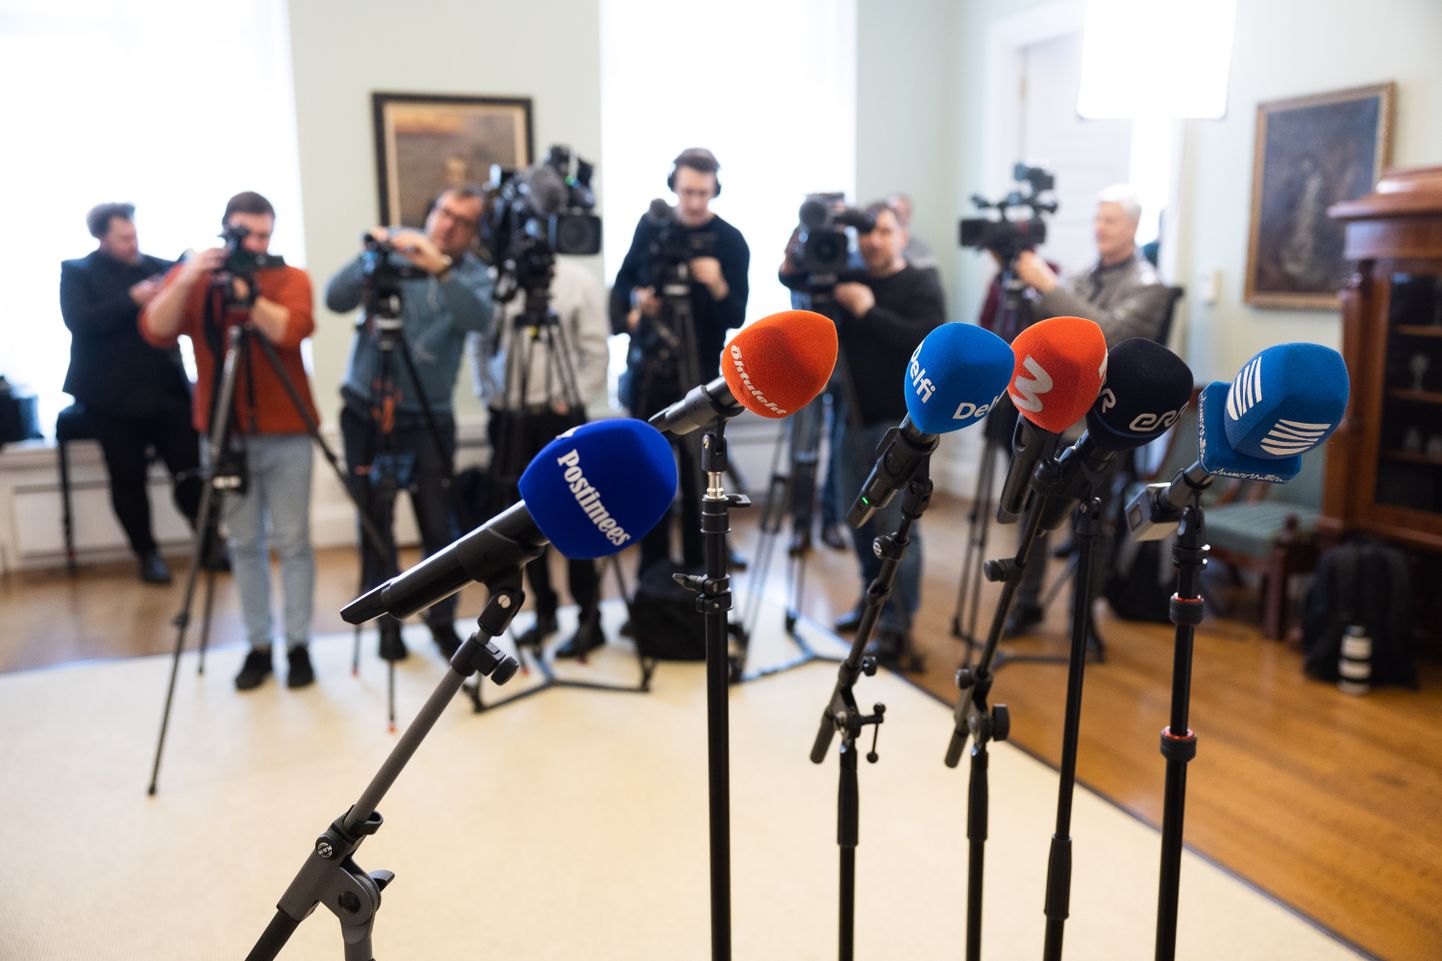 28.03.2023, Tallinn
Koalitsioonikõneluste pressikonverents. Mikrofonid, press, ajakirjanikud, pressivabadus.
Foto Tairo Lutter, Postimees